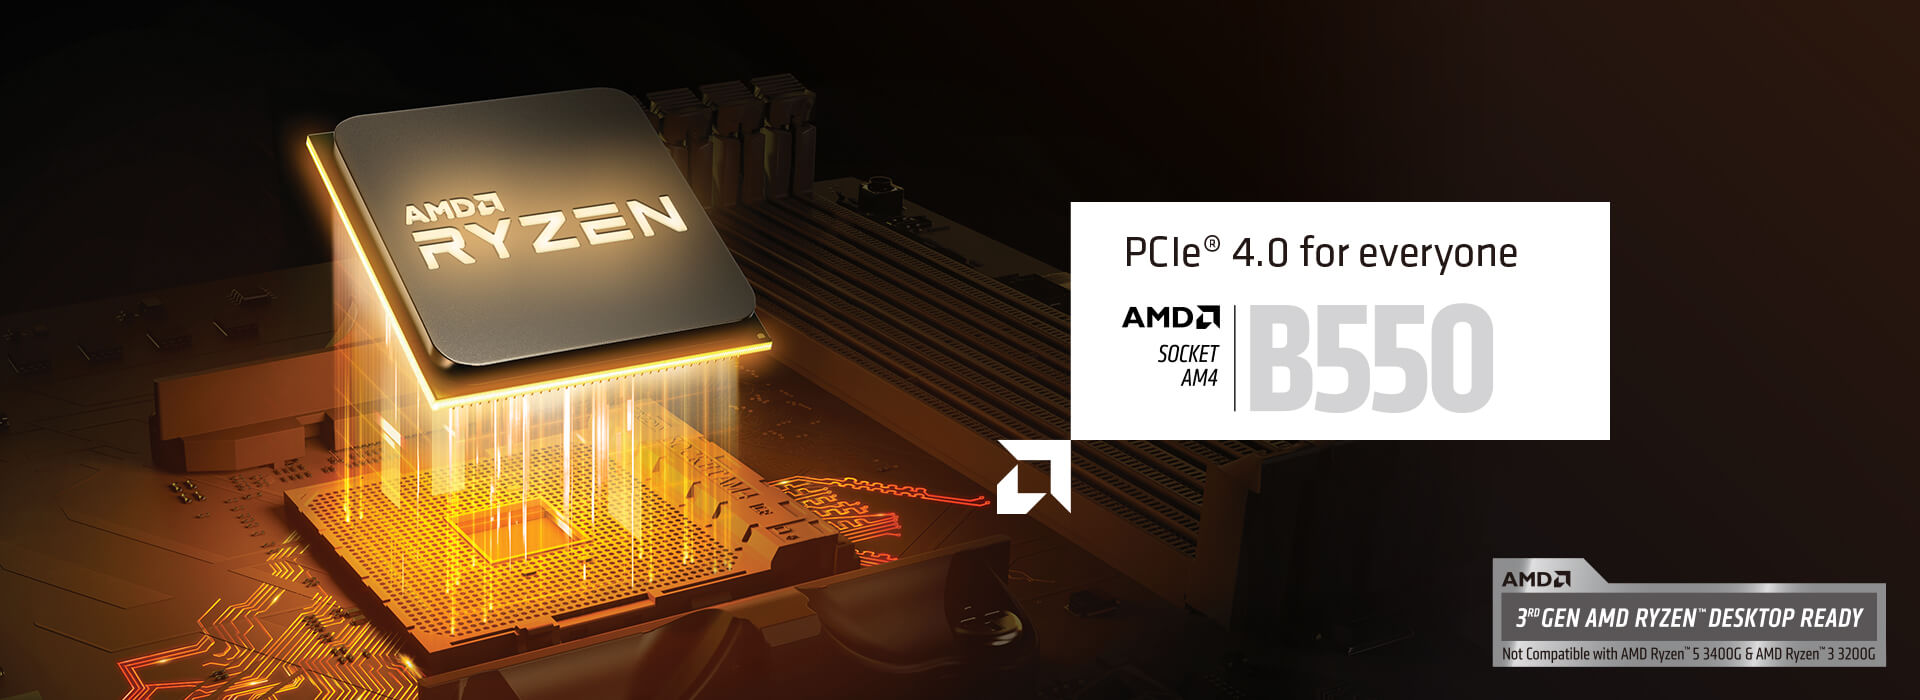 PCIe 4.0 для всех. AMD SOCKET AMD B550. ПОДДЕРЖКА ПРОЦЕССОРОВ AMD RYZEN 3-ГО ПОКОЛЕНИЯ. Не поддерживает AMD Ryzen 5 3400G и AMD Ryzen 3 3200G.